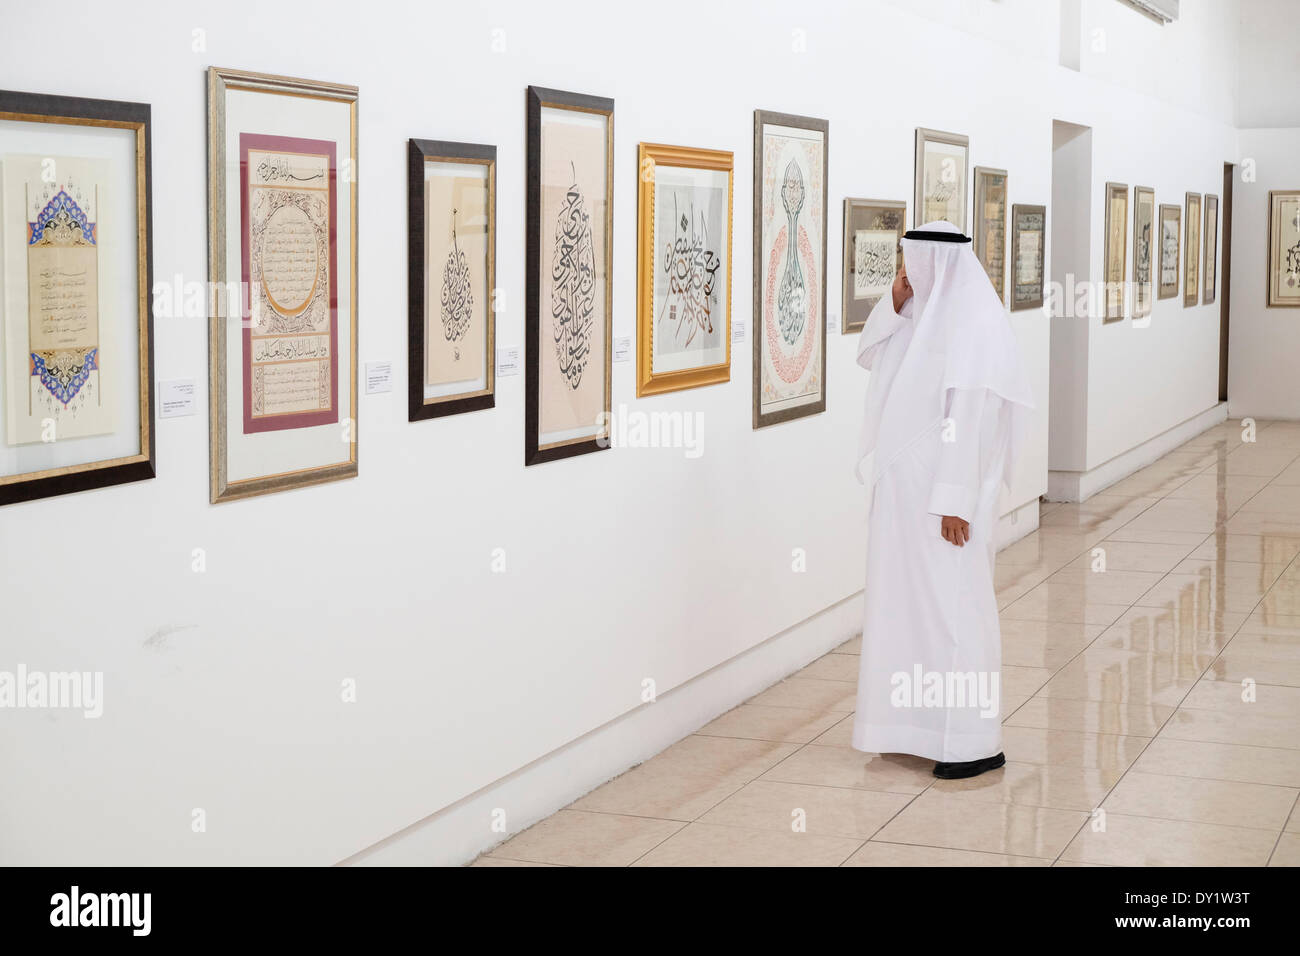 Sharjah, Vereinigte Arabische Emirate. 3. April 2014; Eröffnungstag der Sharjah Biennale Kalligraphie statt im Emirat Sharjah in den Vereinigten Arabischen Emiraten. Bildnachweis: Iain Masterton/Alamy Live-Nachrichten Stockfoto